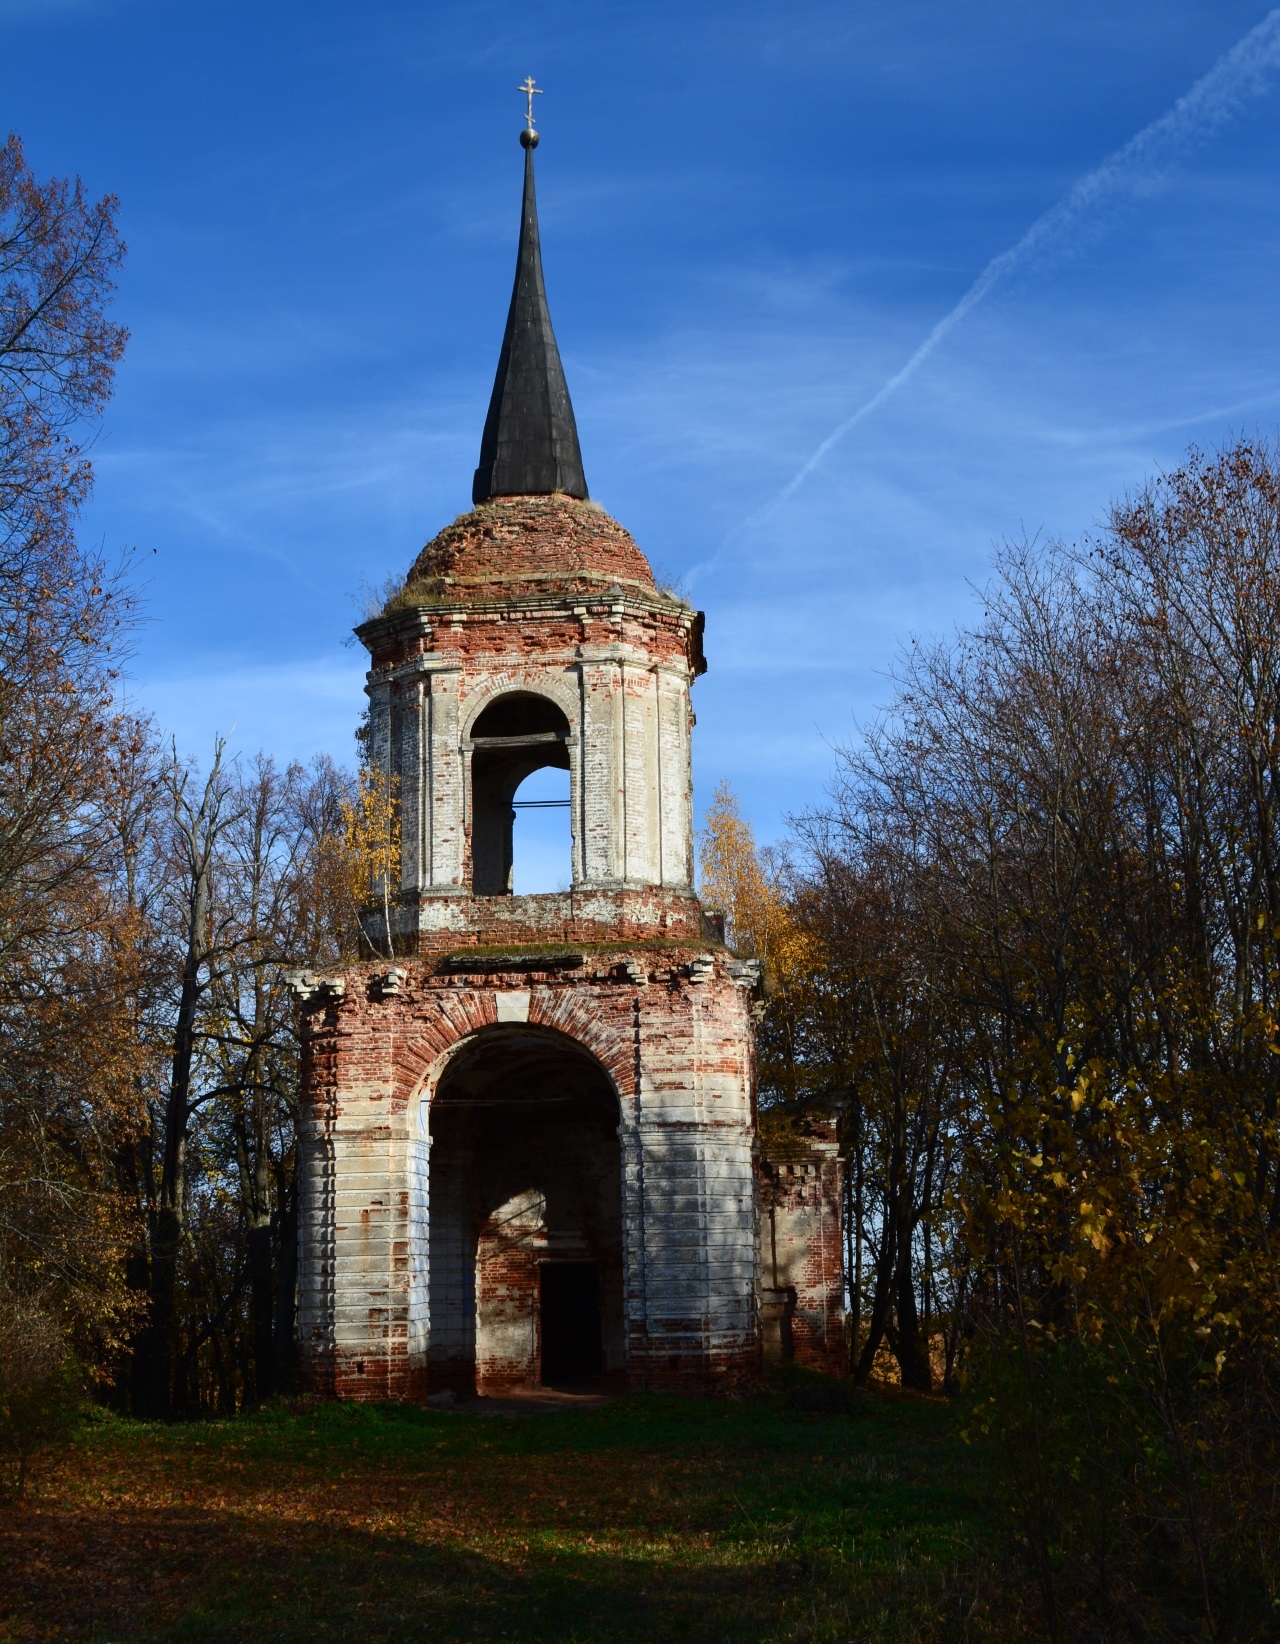 Спасская церковь, постройка 1780 г.